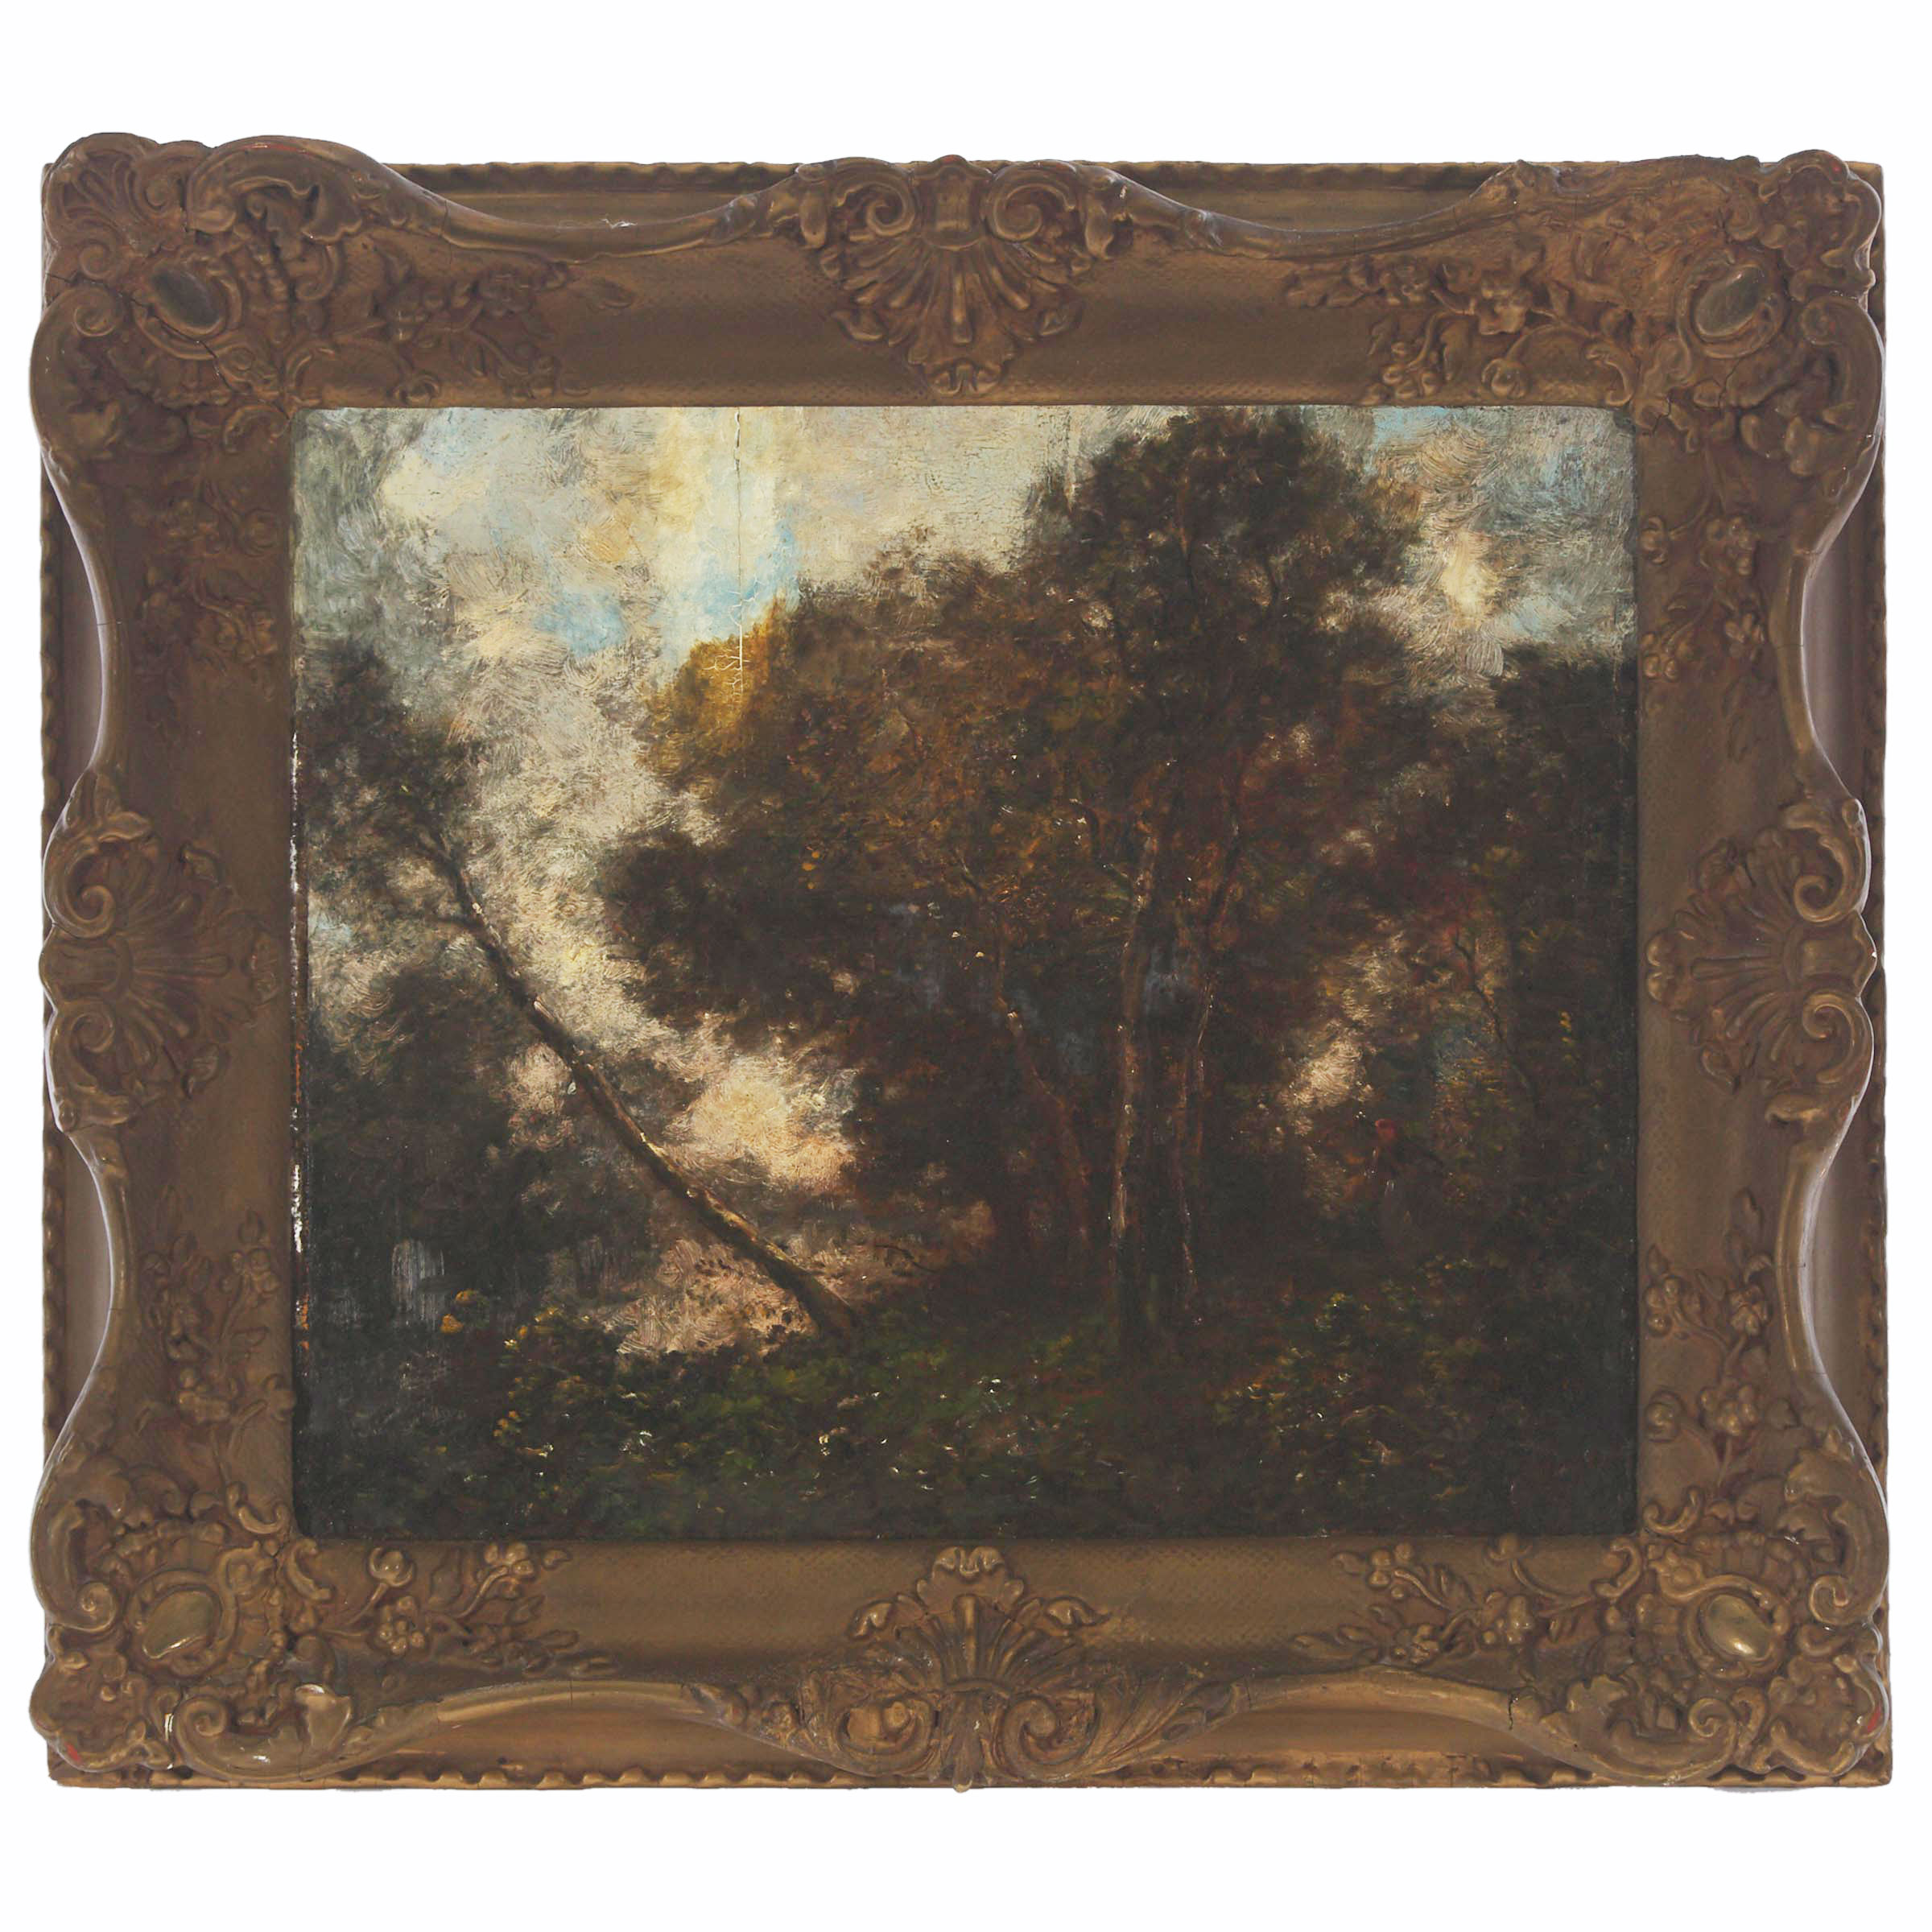 Follower of Jean-Baptiste-Camille Corot (1796-1875)